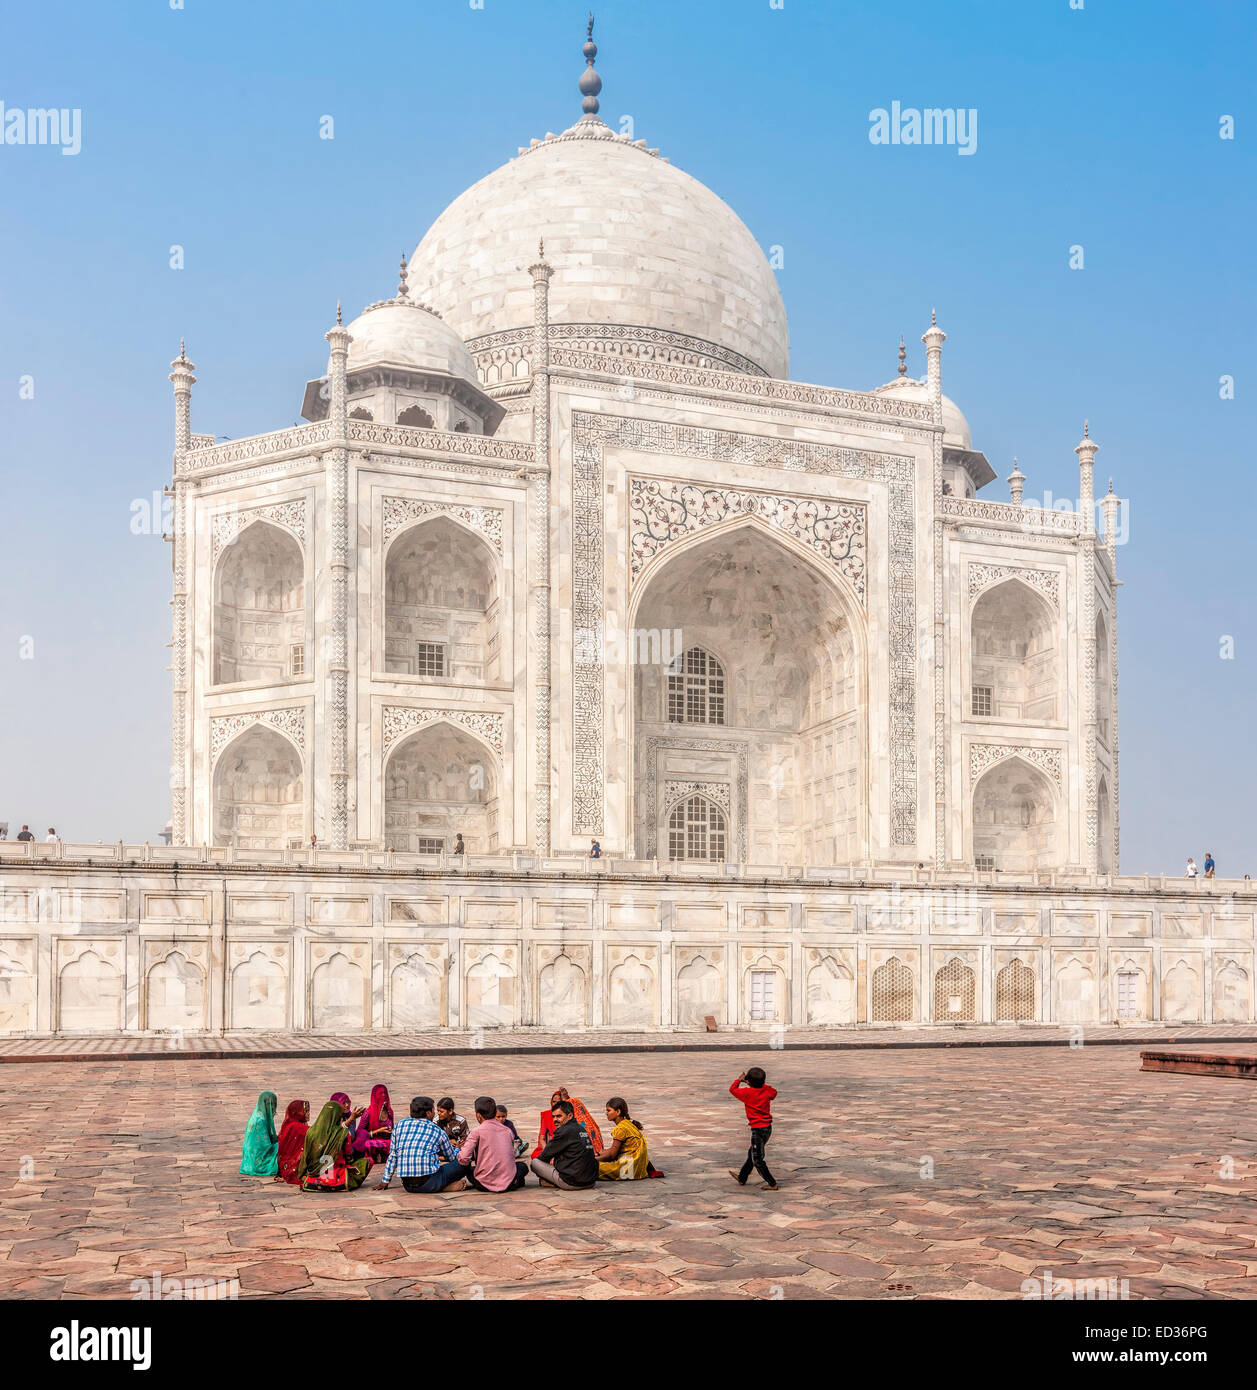 AGRA, INDE - NOV 17, 2012 : se détendre autour des murs du Taj Mahal. Taj Mahal reconnu comme joyau de l'art musulman en Inde Banque D'Images